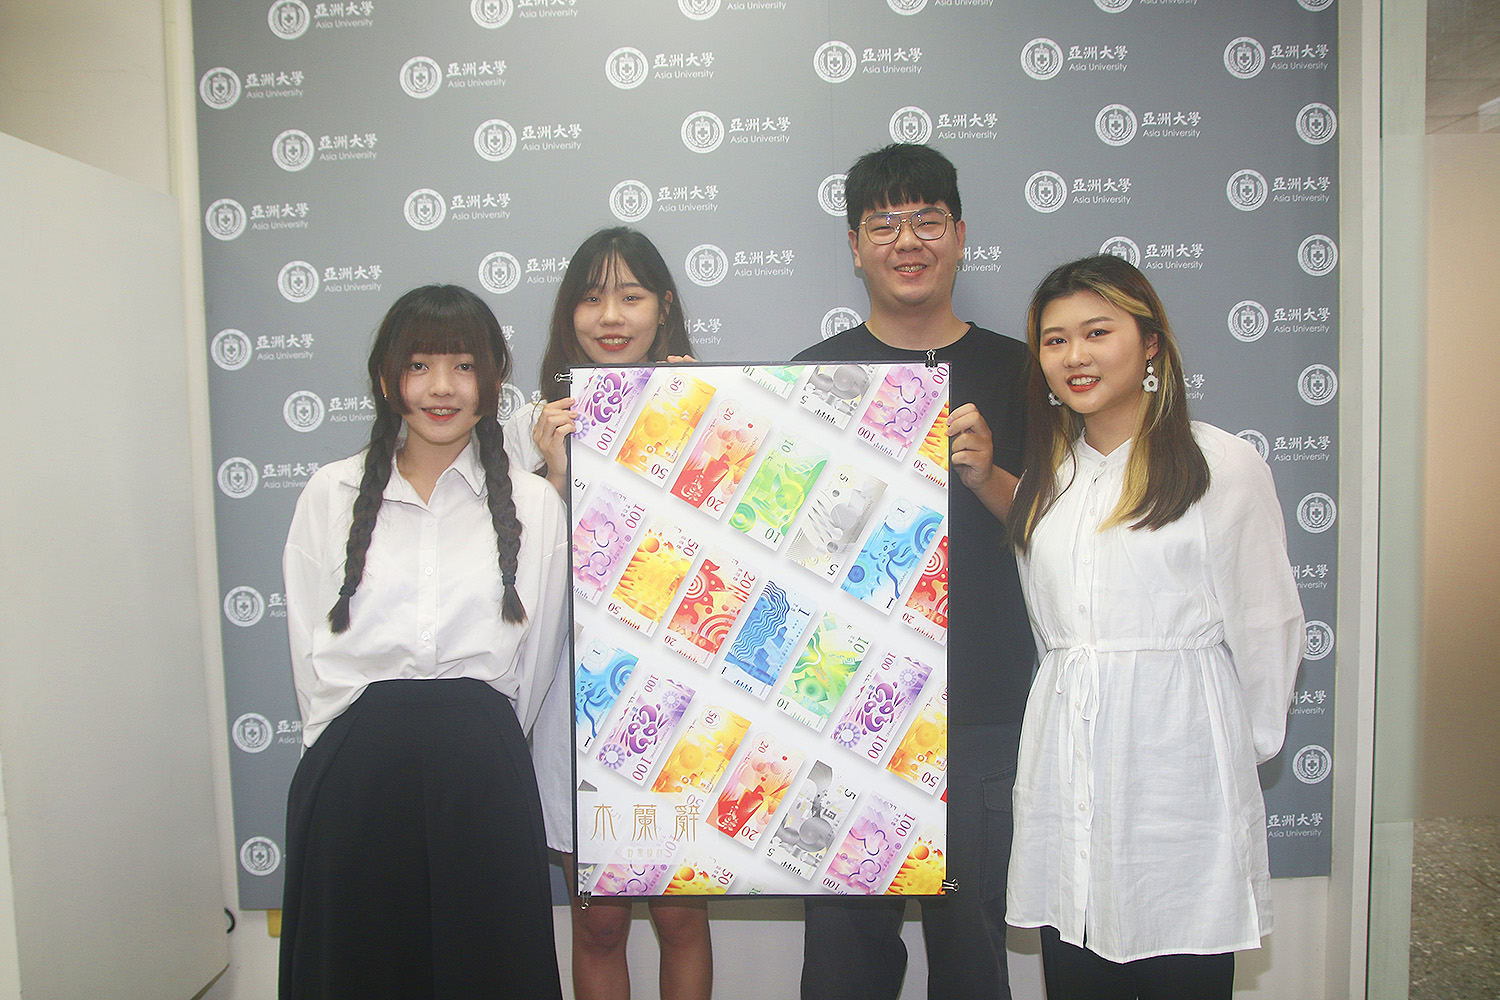 (由左至右) 亞大商設系黃盈潔、謝家齊、劉晉辰、許紜禎 4名同學，勇奪德國紅點(Red dot)設計概念獎